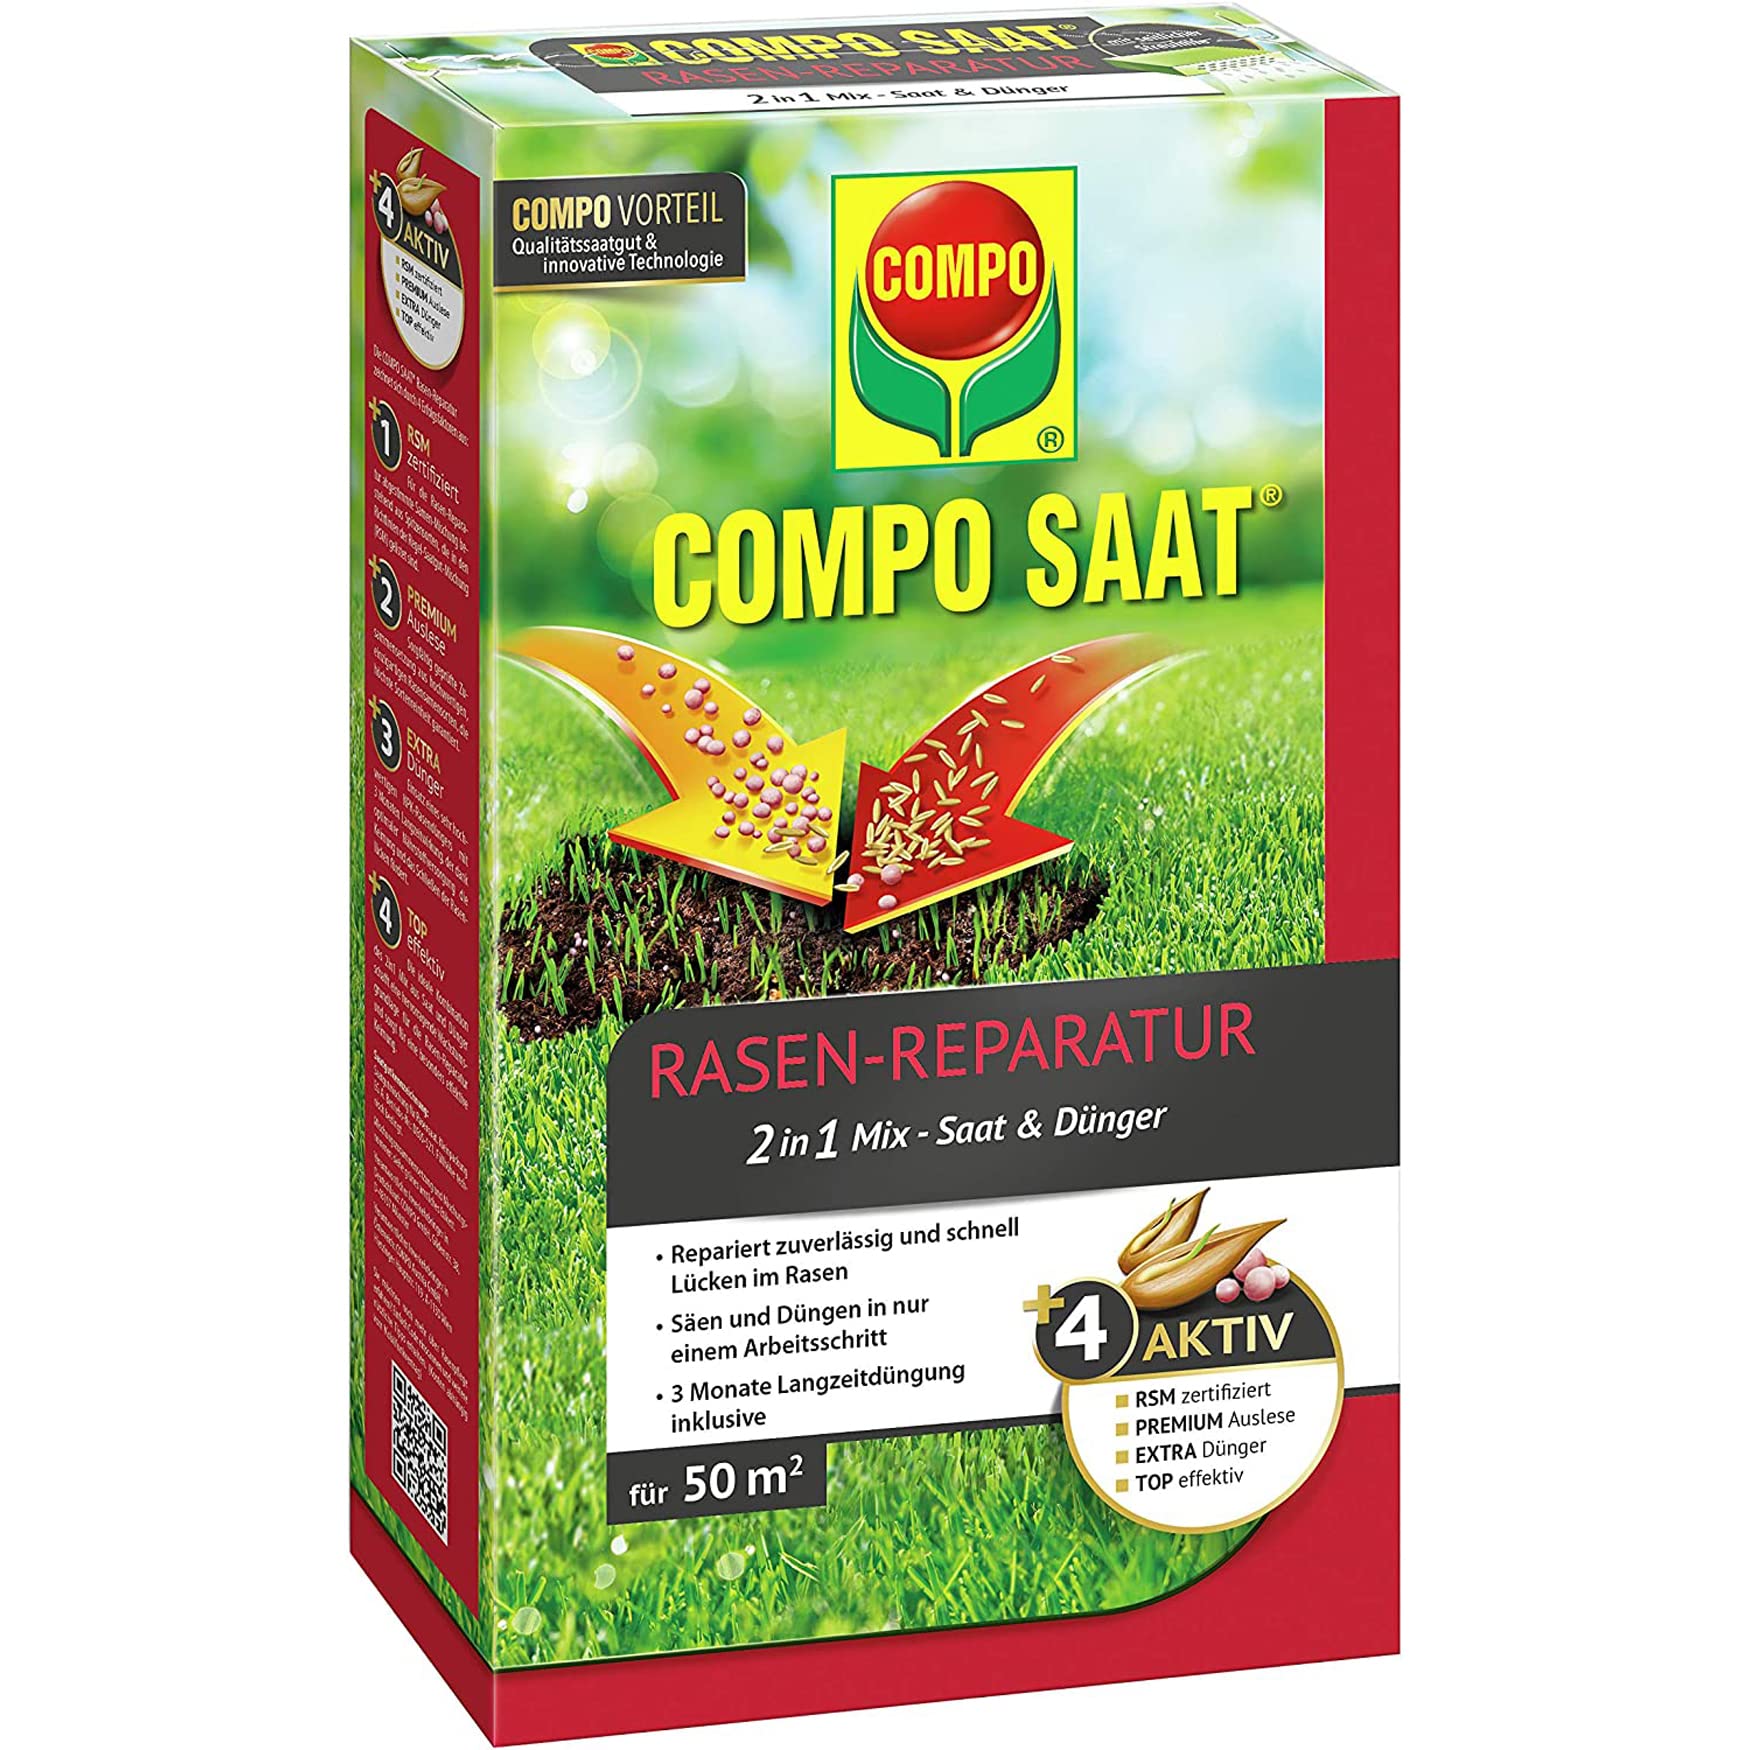 COMPO SAAT Rasen-Reparatur, Mischung aus Rasensamen / Grassamen und Rasendünger mit 3 Monate Langzeitwirkung, 1,2 kg, 50 m²